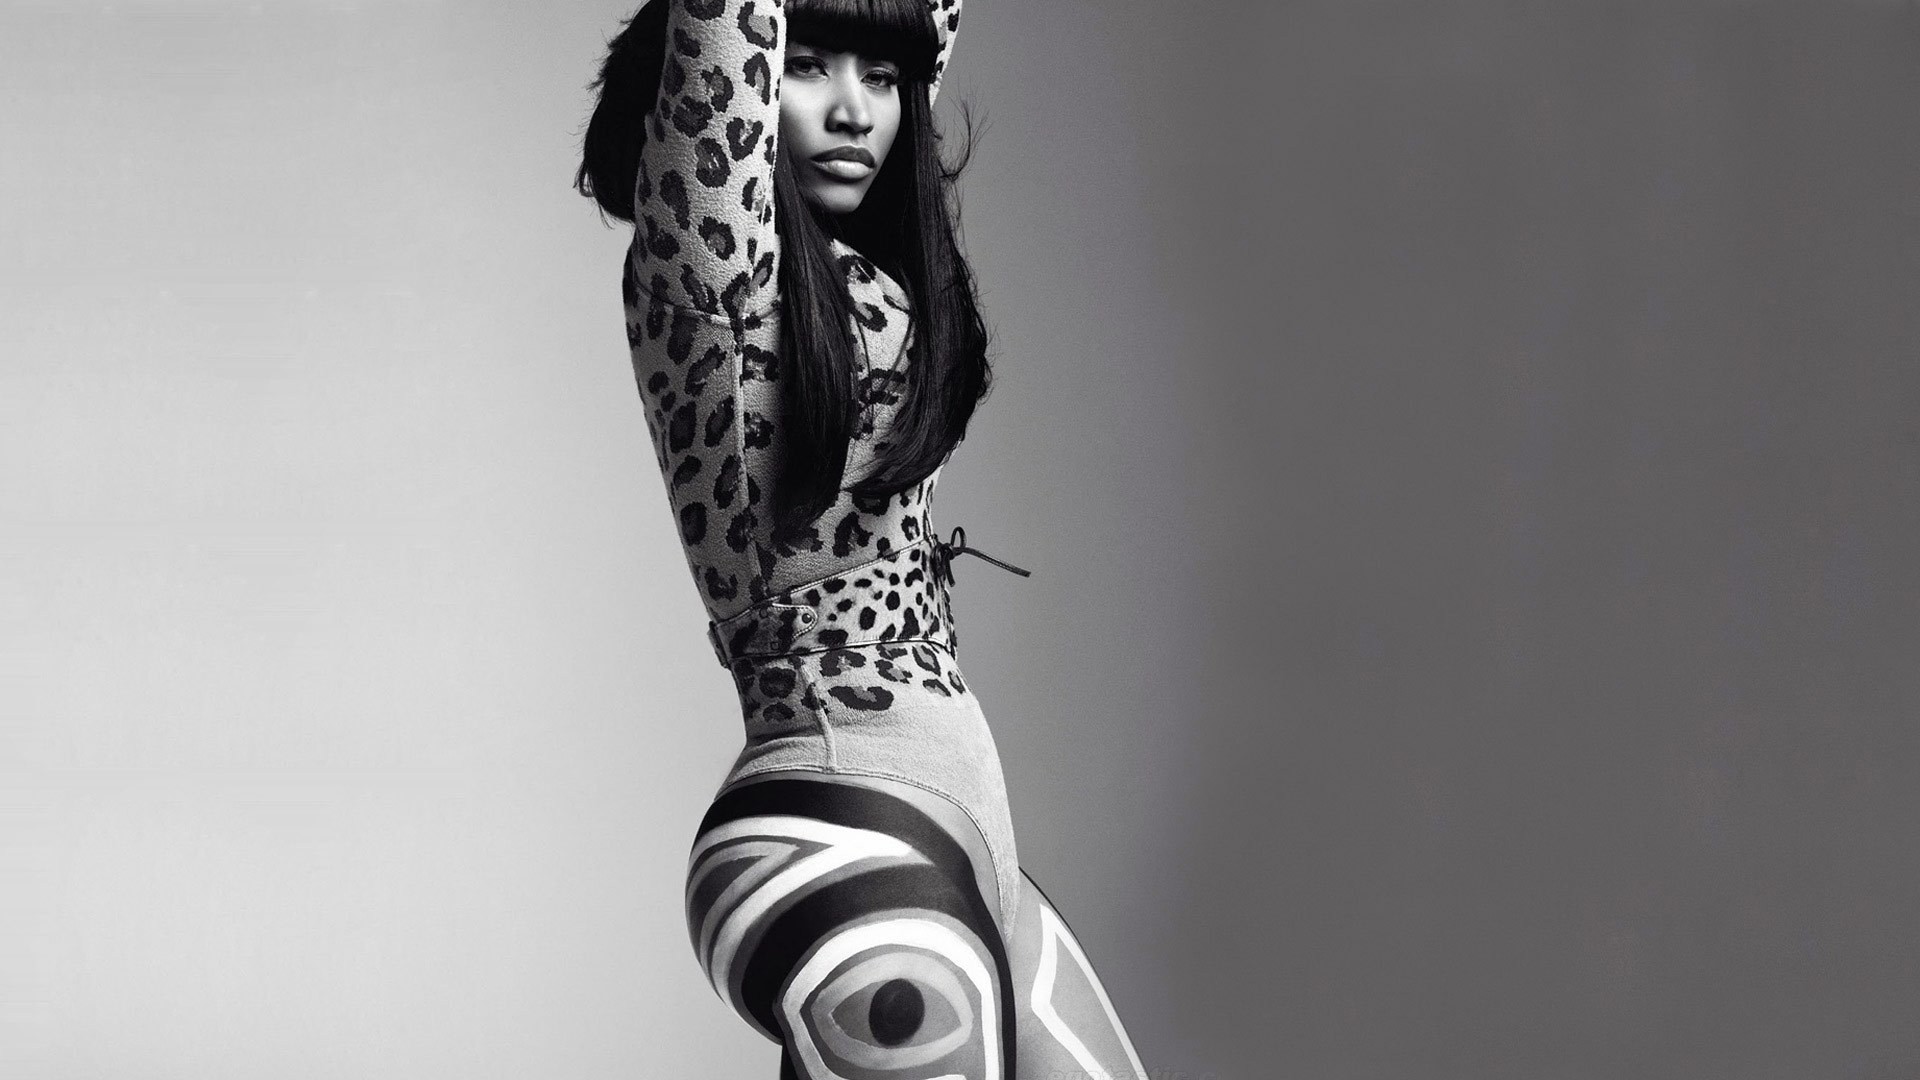 Nicki Minaj IPhone Wallpaper.